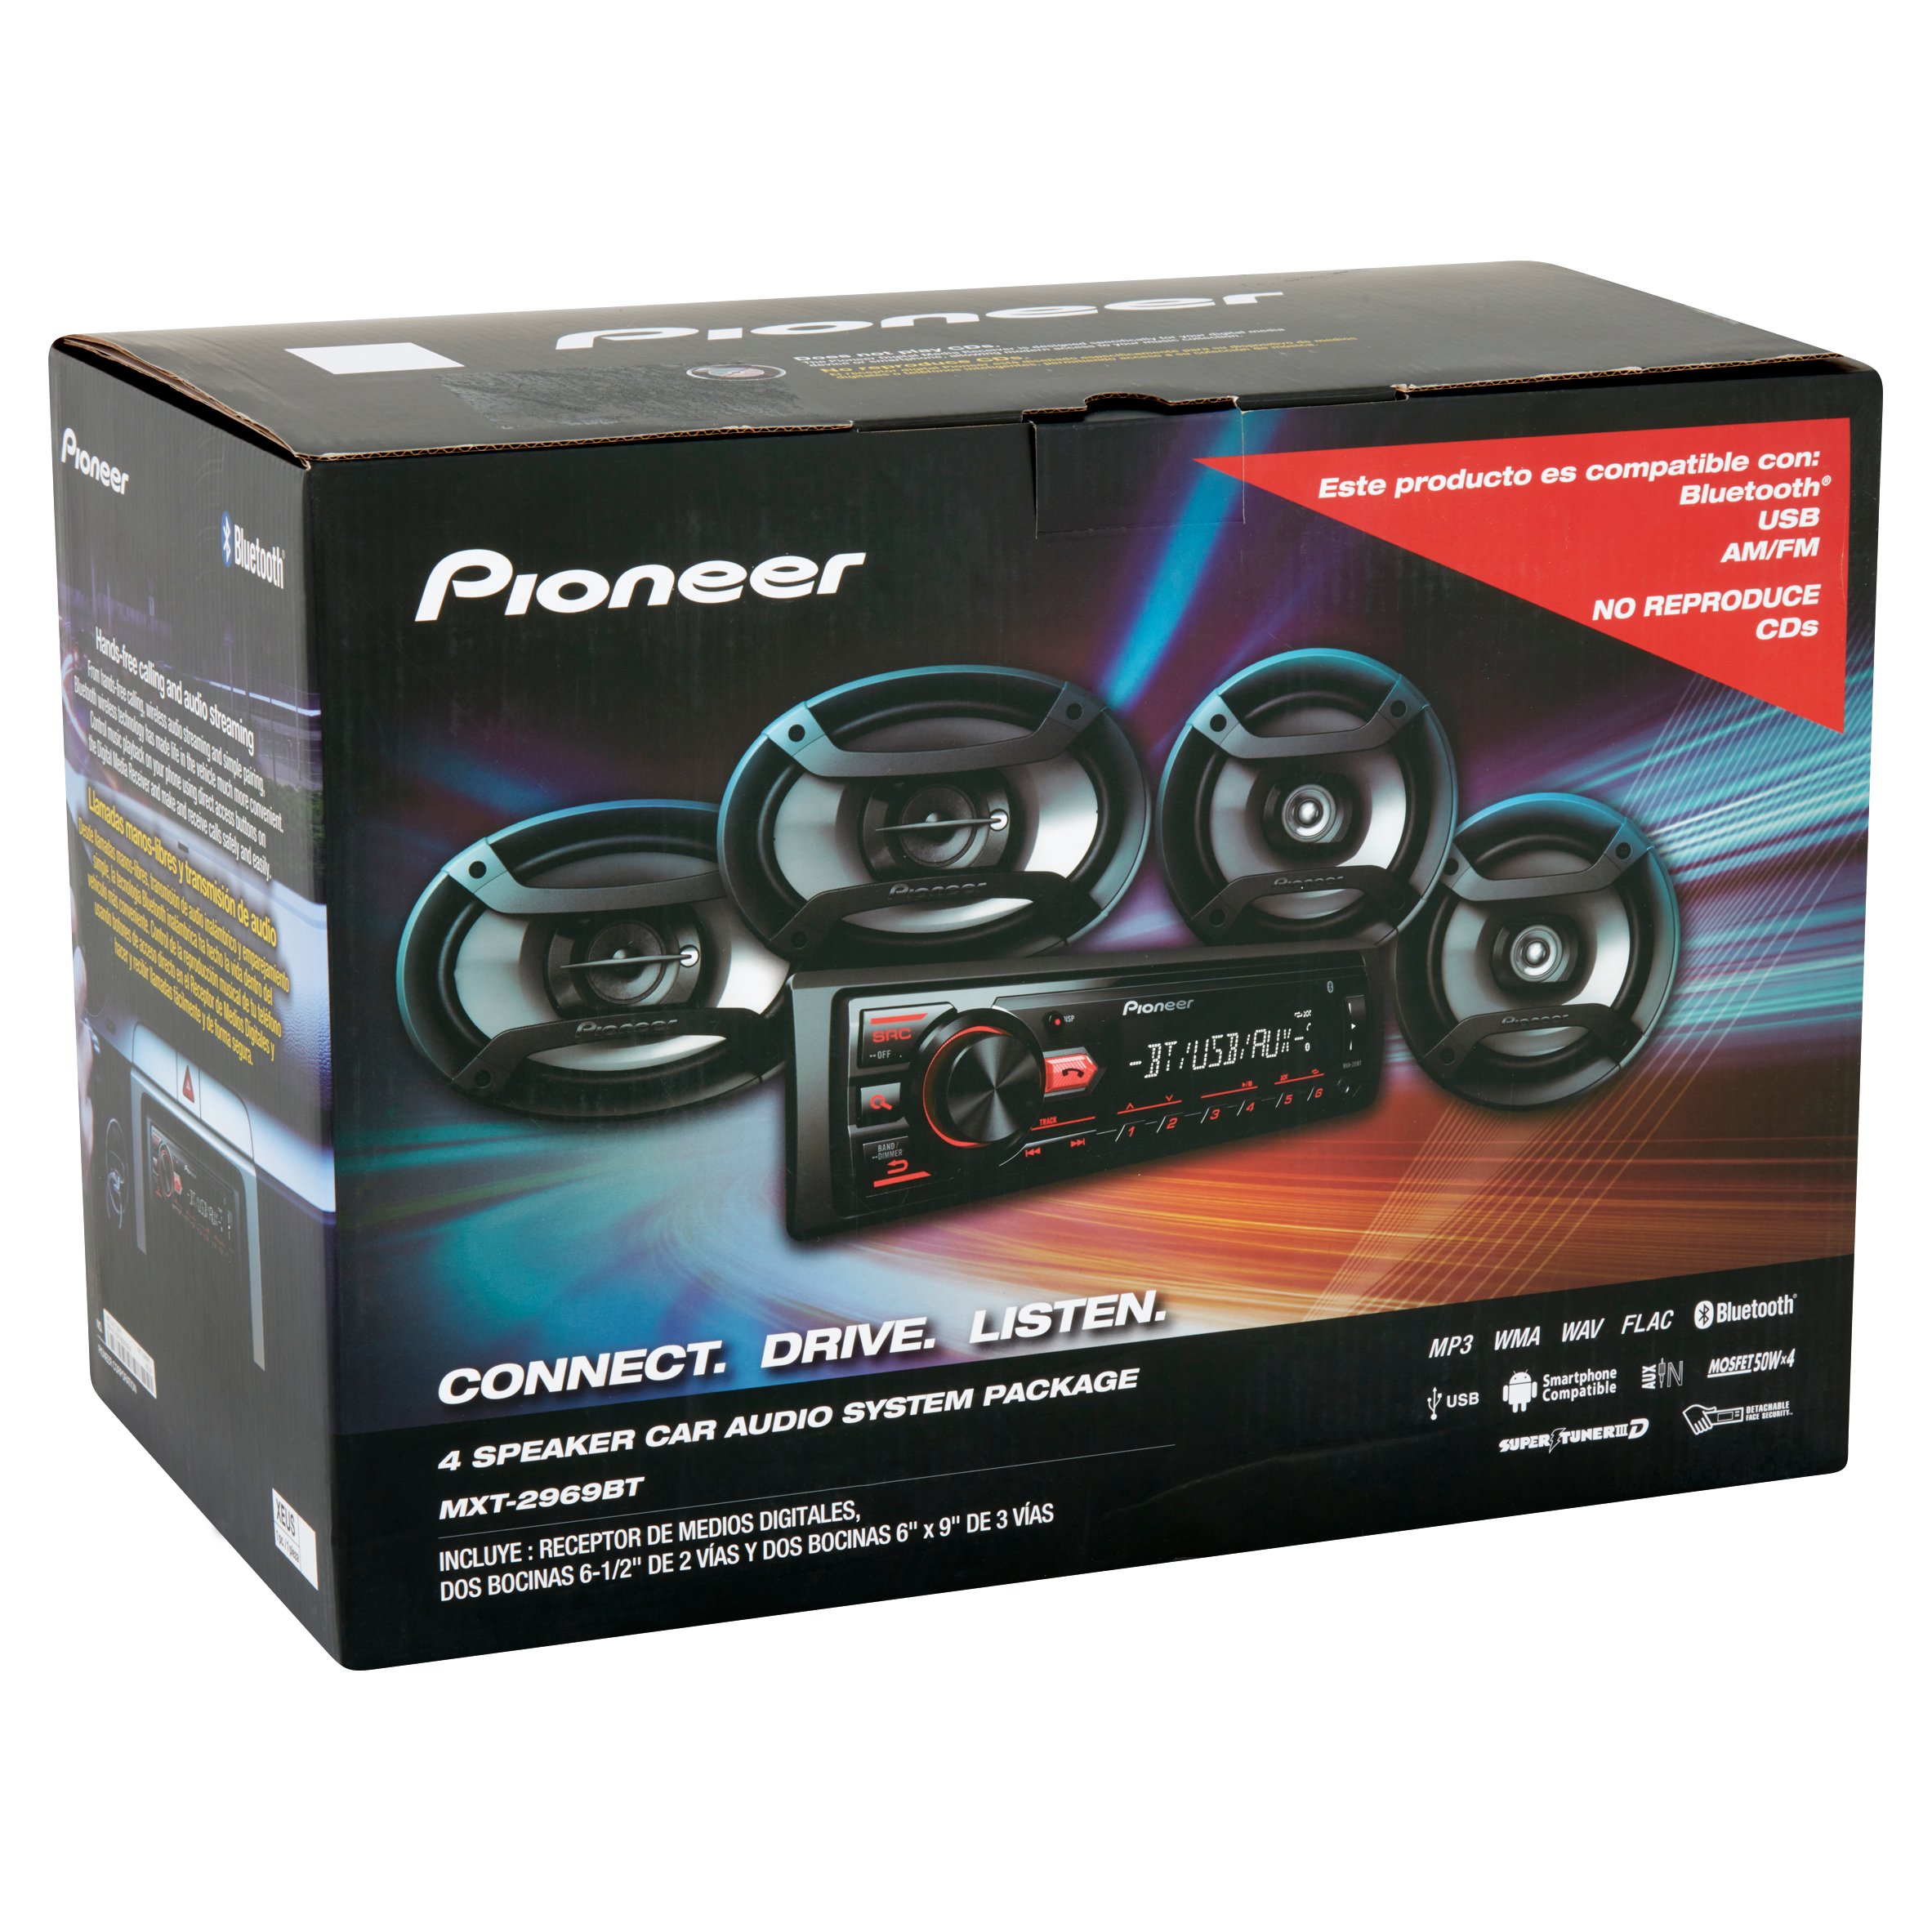 Pioneer 4 Speaker Car Audio System Package - image 3 of 5